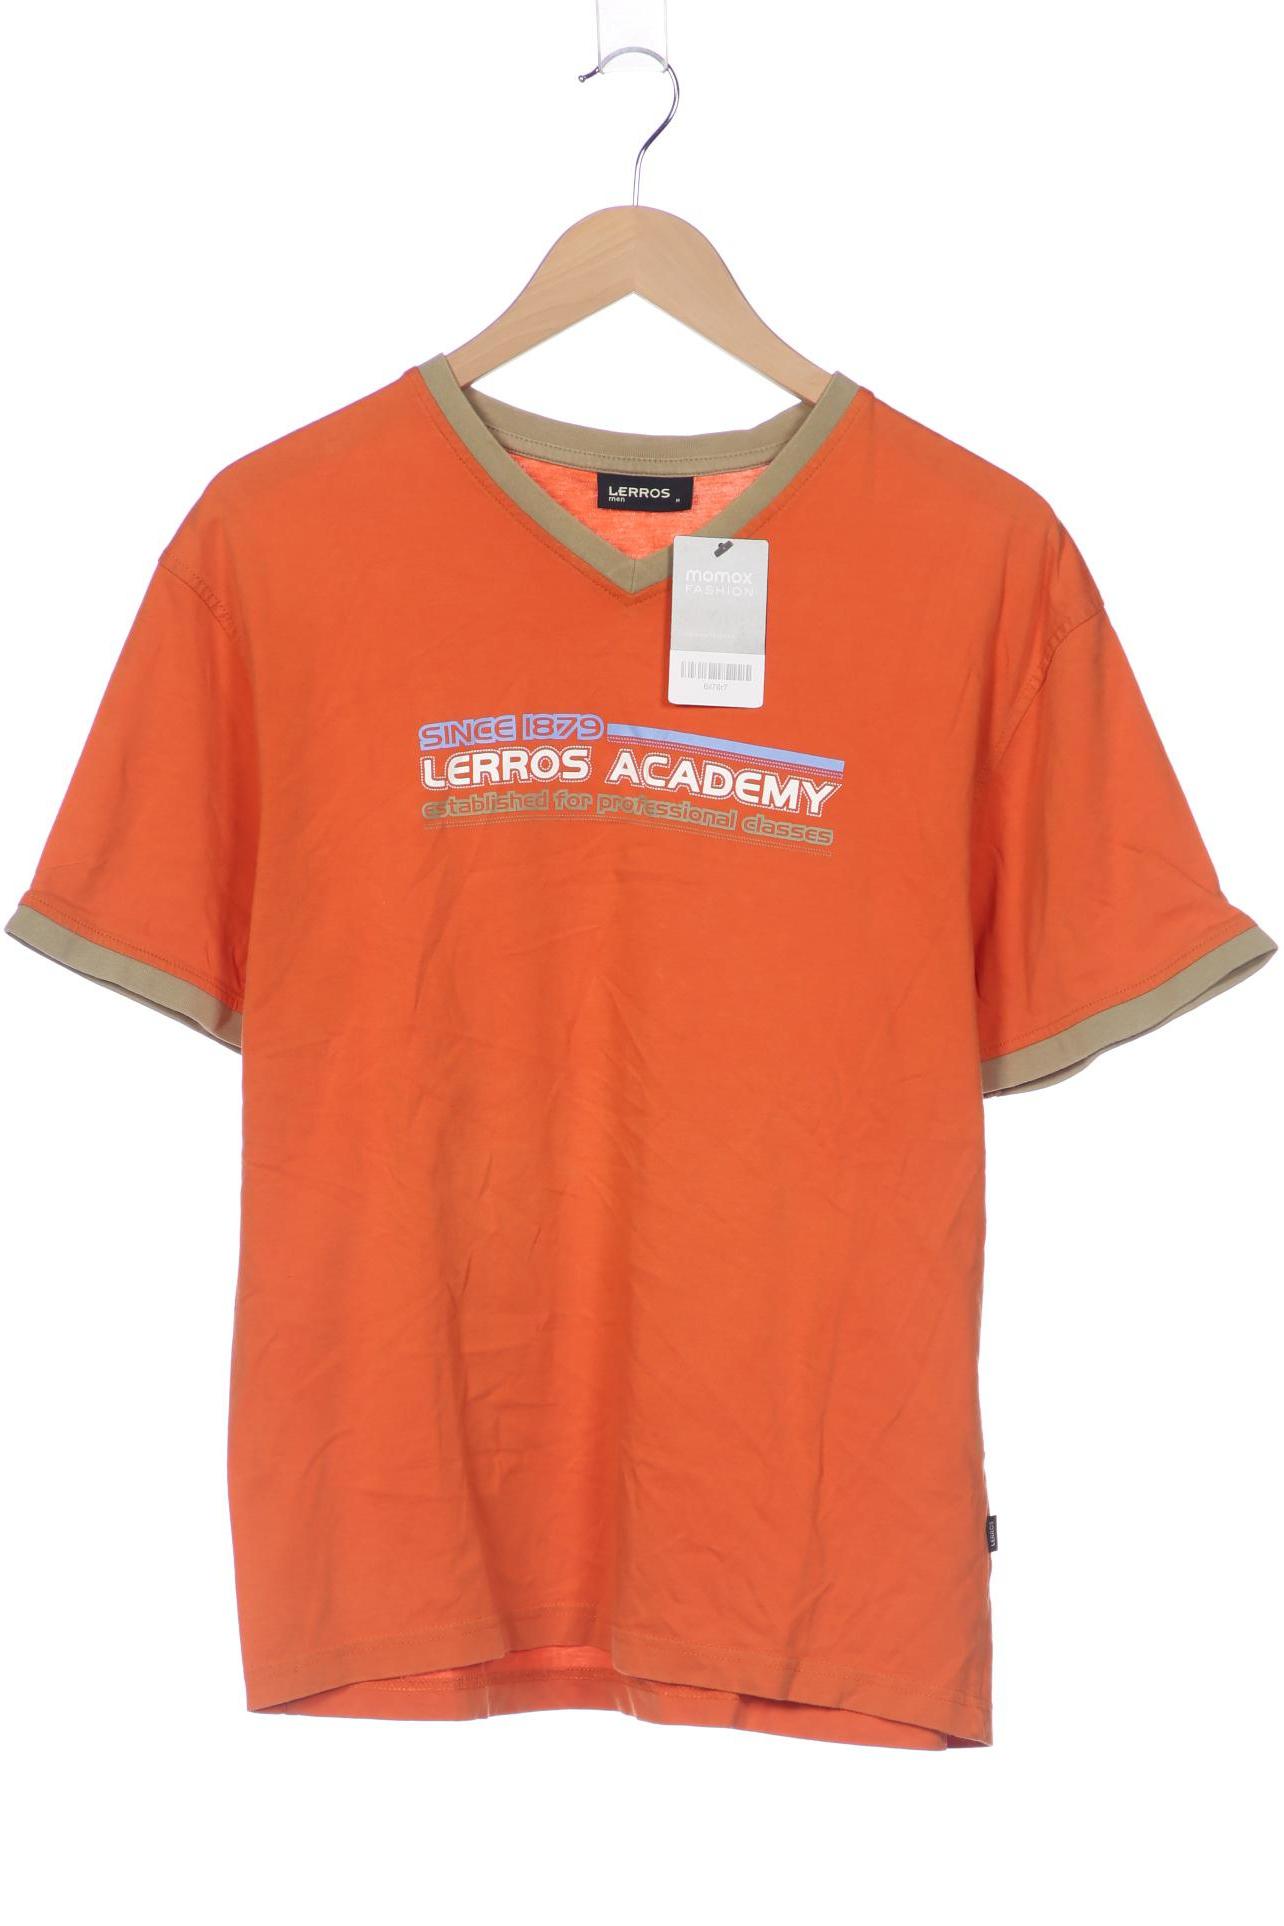 Lerros Herren T-Shirt, orange von Lerros